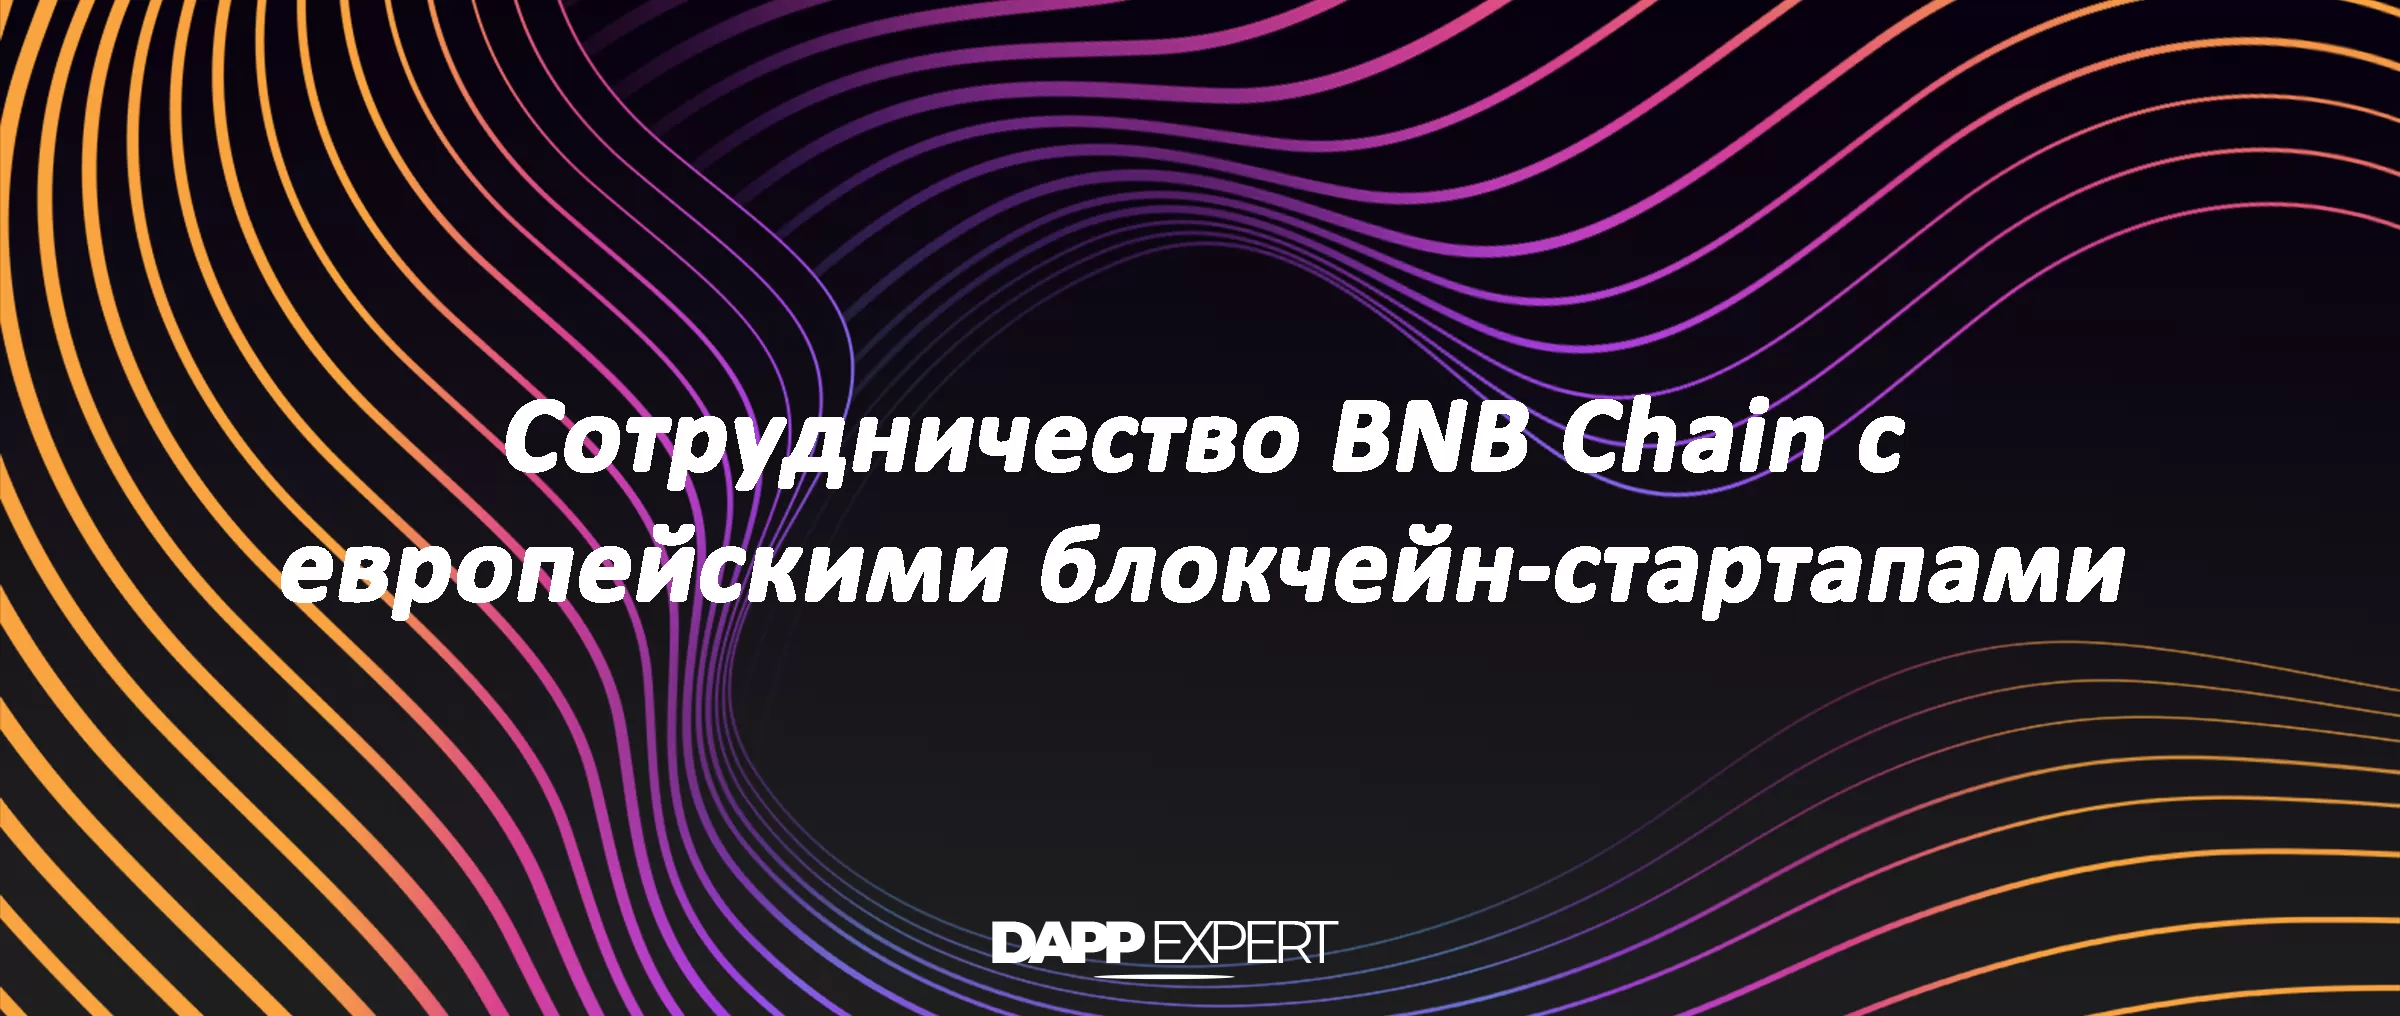 Сотрудничество BNB Chain с европейскими блокчейн-стартапами